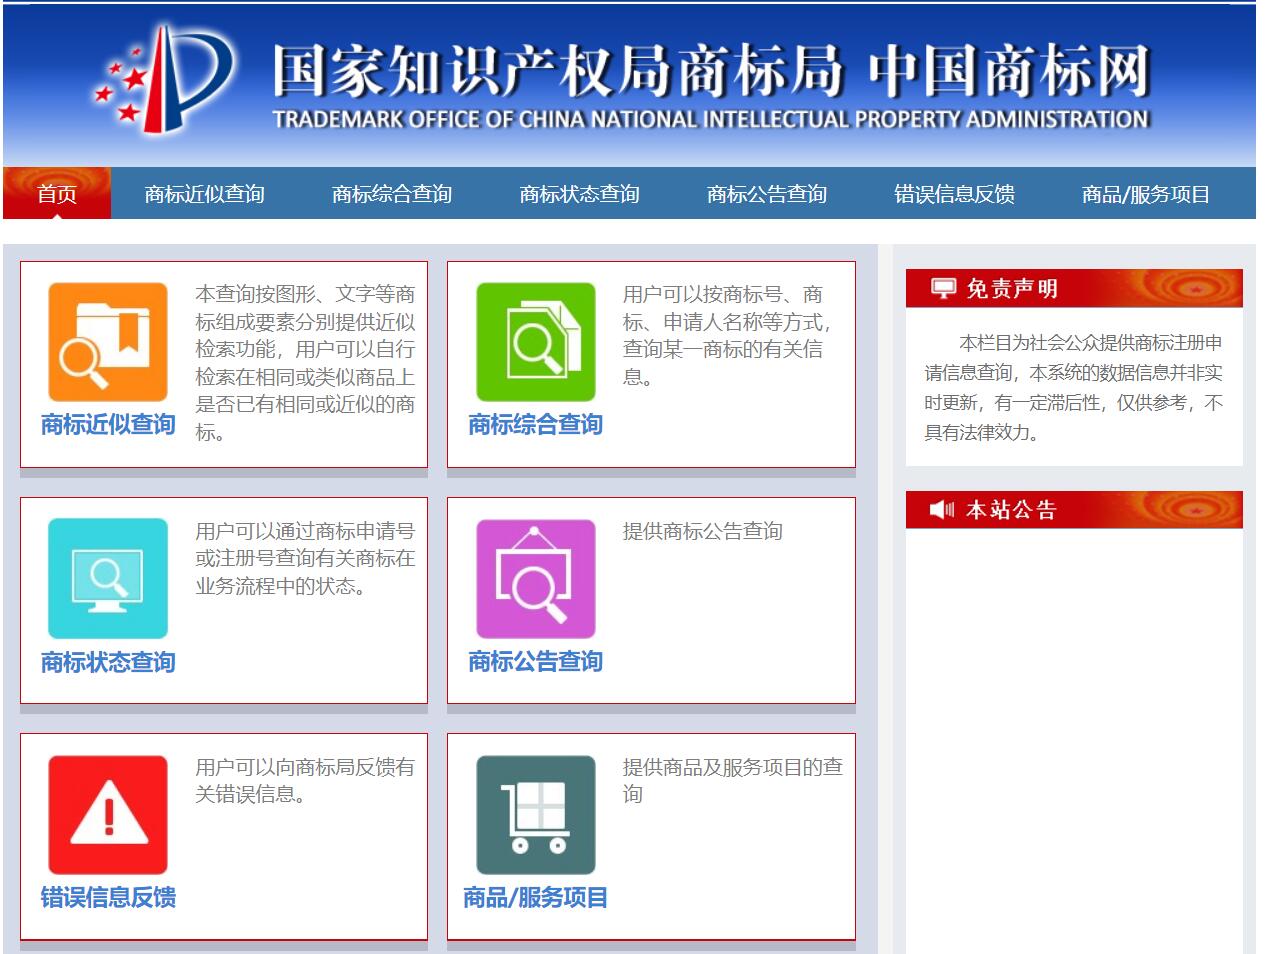 上海青浦区商标代理机构策朋办理商标注册